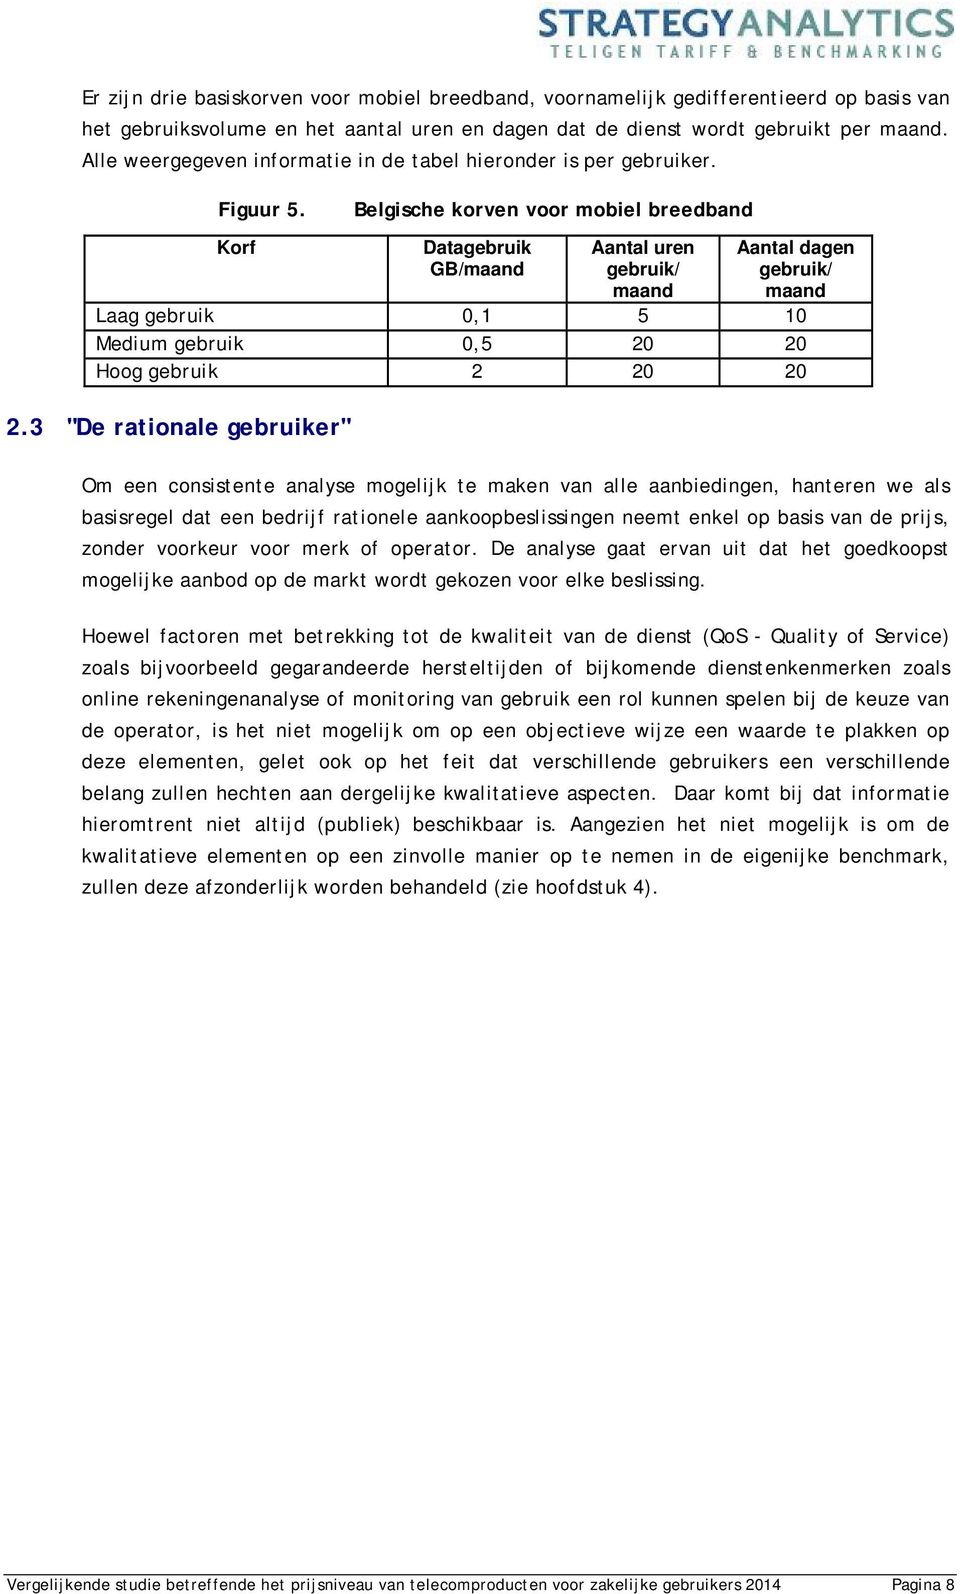 Belgische korven voor mobiel breedband Korf Datagebruik GB/maand Aantal uren gebruik/ maand Aantal dagen gebruik/ maand Laag gebruik 0,1 5 10 Medium gebruik 0,5 20 20 Hoog gebruik 2 20 20 2.